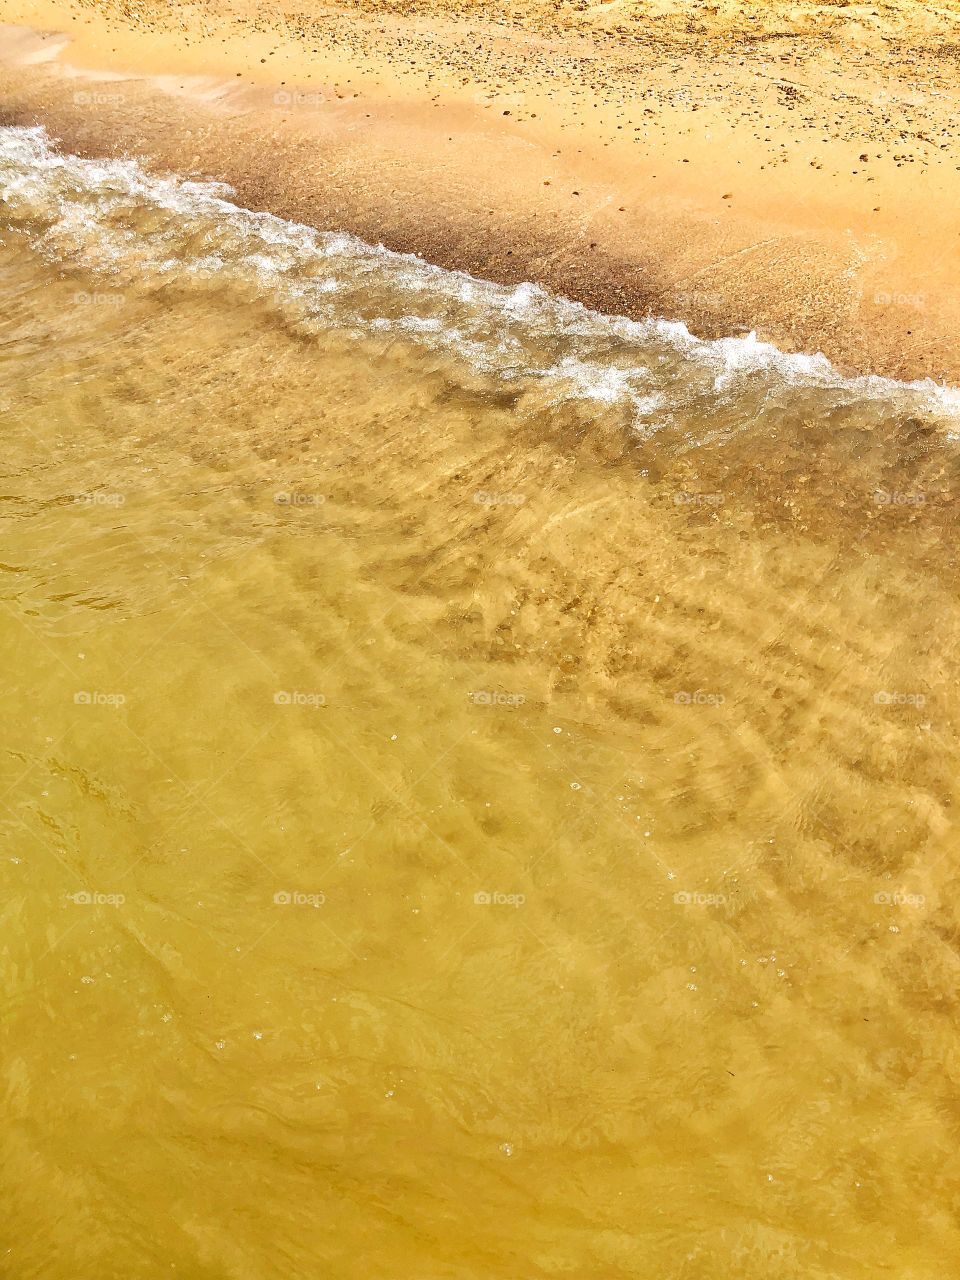 Golden sandy shores of Fresh water. 